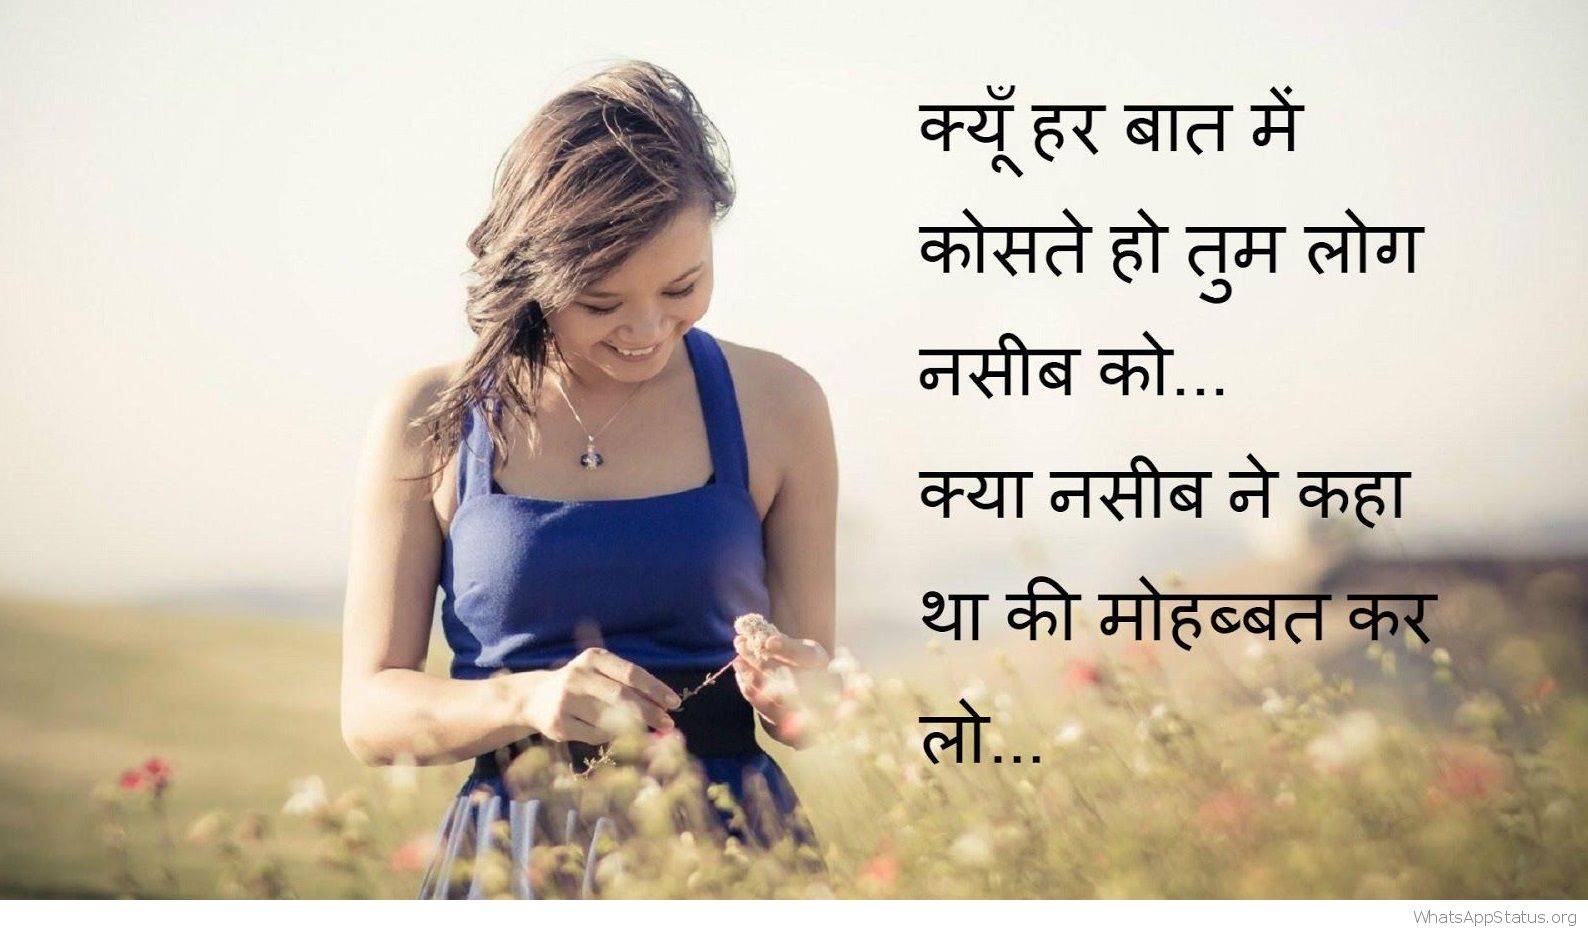 Hindi Love Clipart - Sad Love Hindi Shayari For Girlfriend - 1588x930 ...